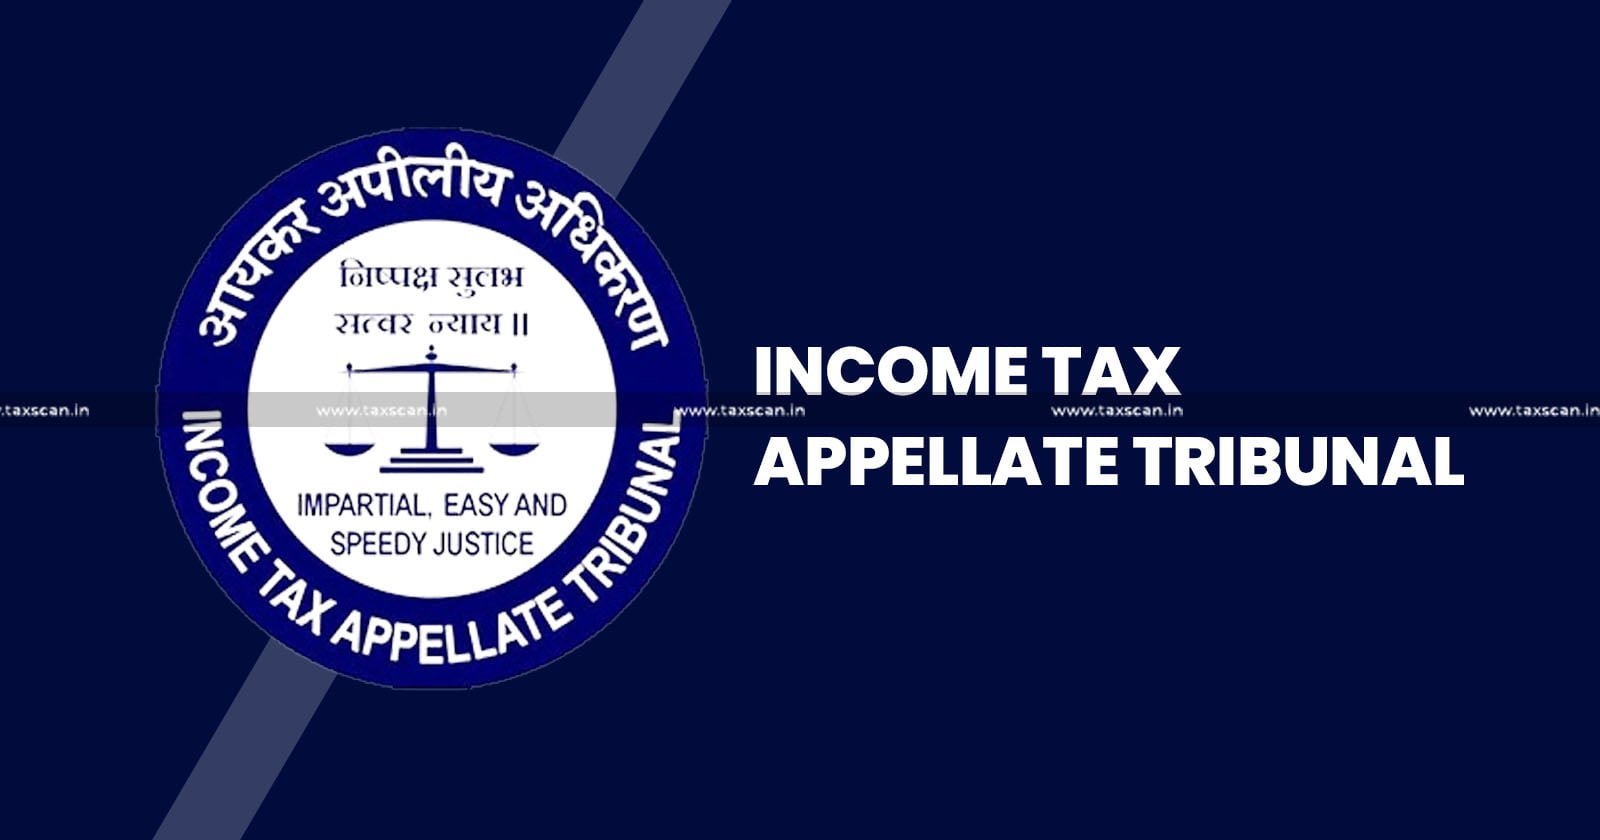 ITAT - ITAT Kolkata - Income tax - Income tax news - Assessing Officer - taxscan